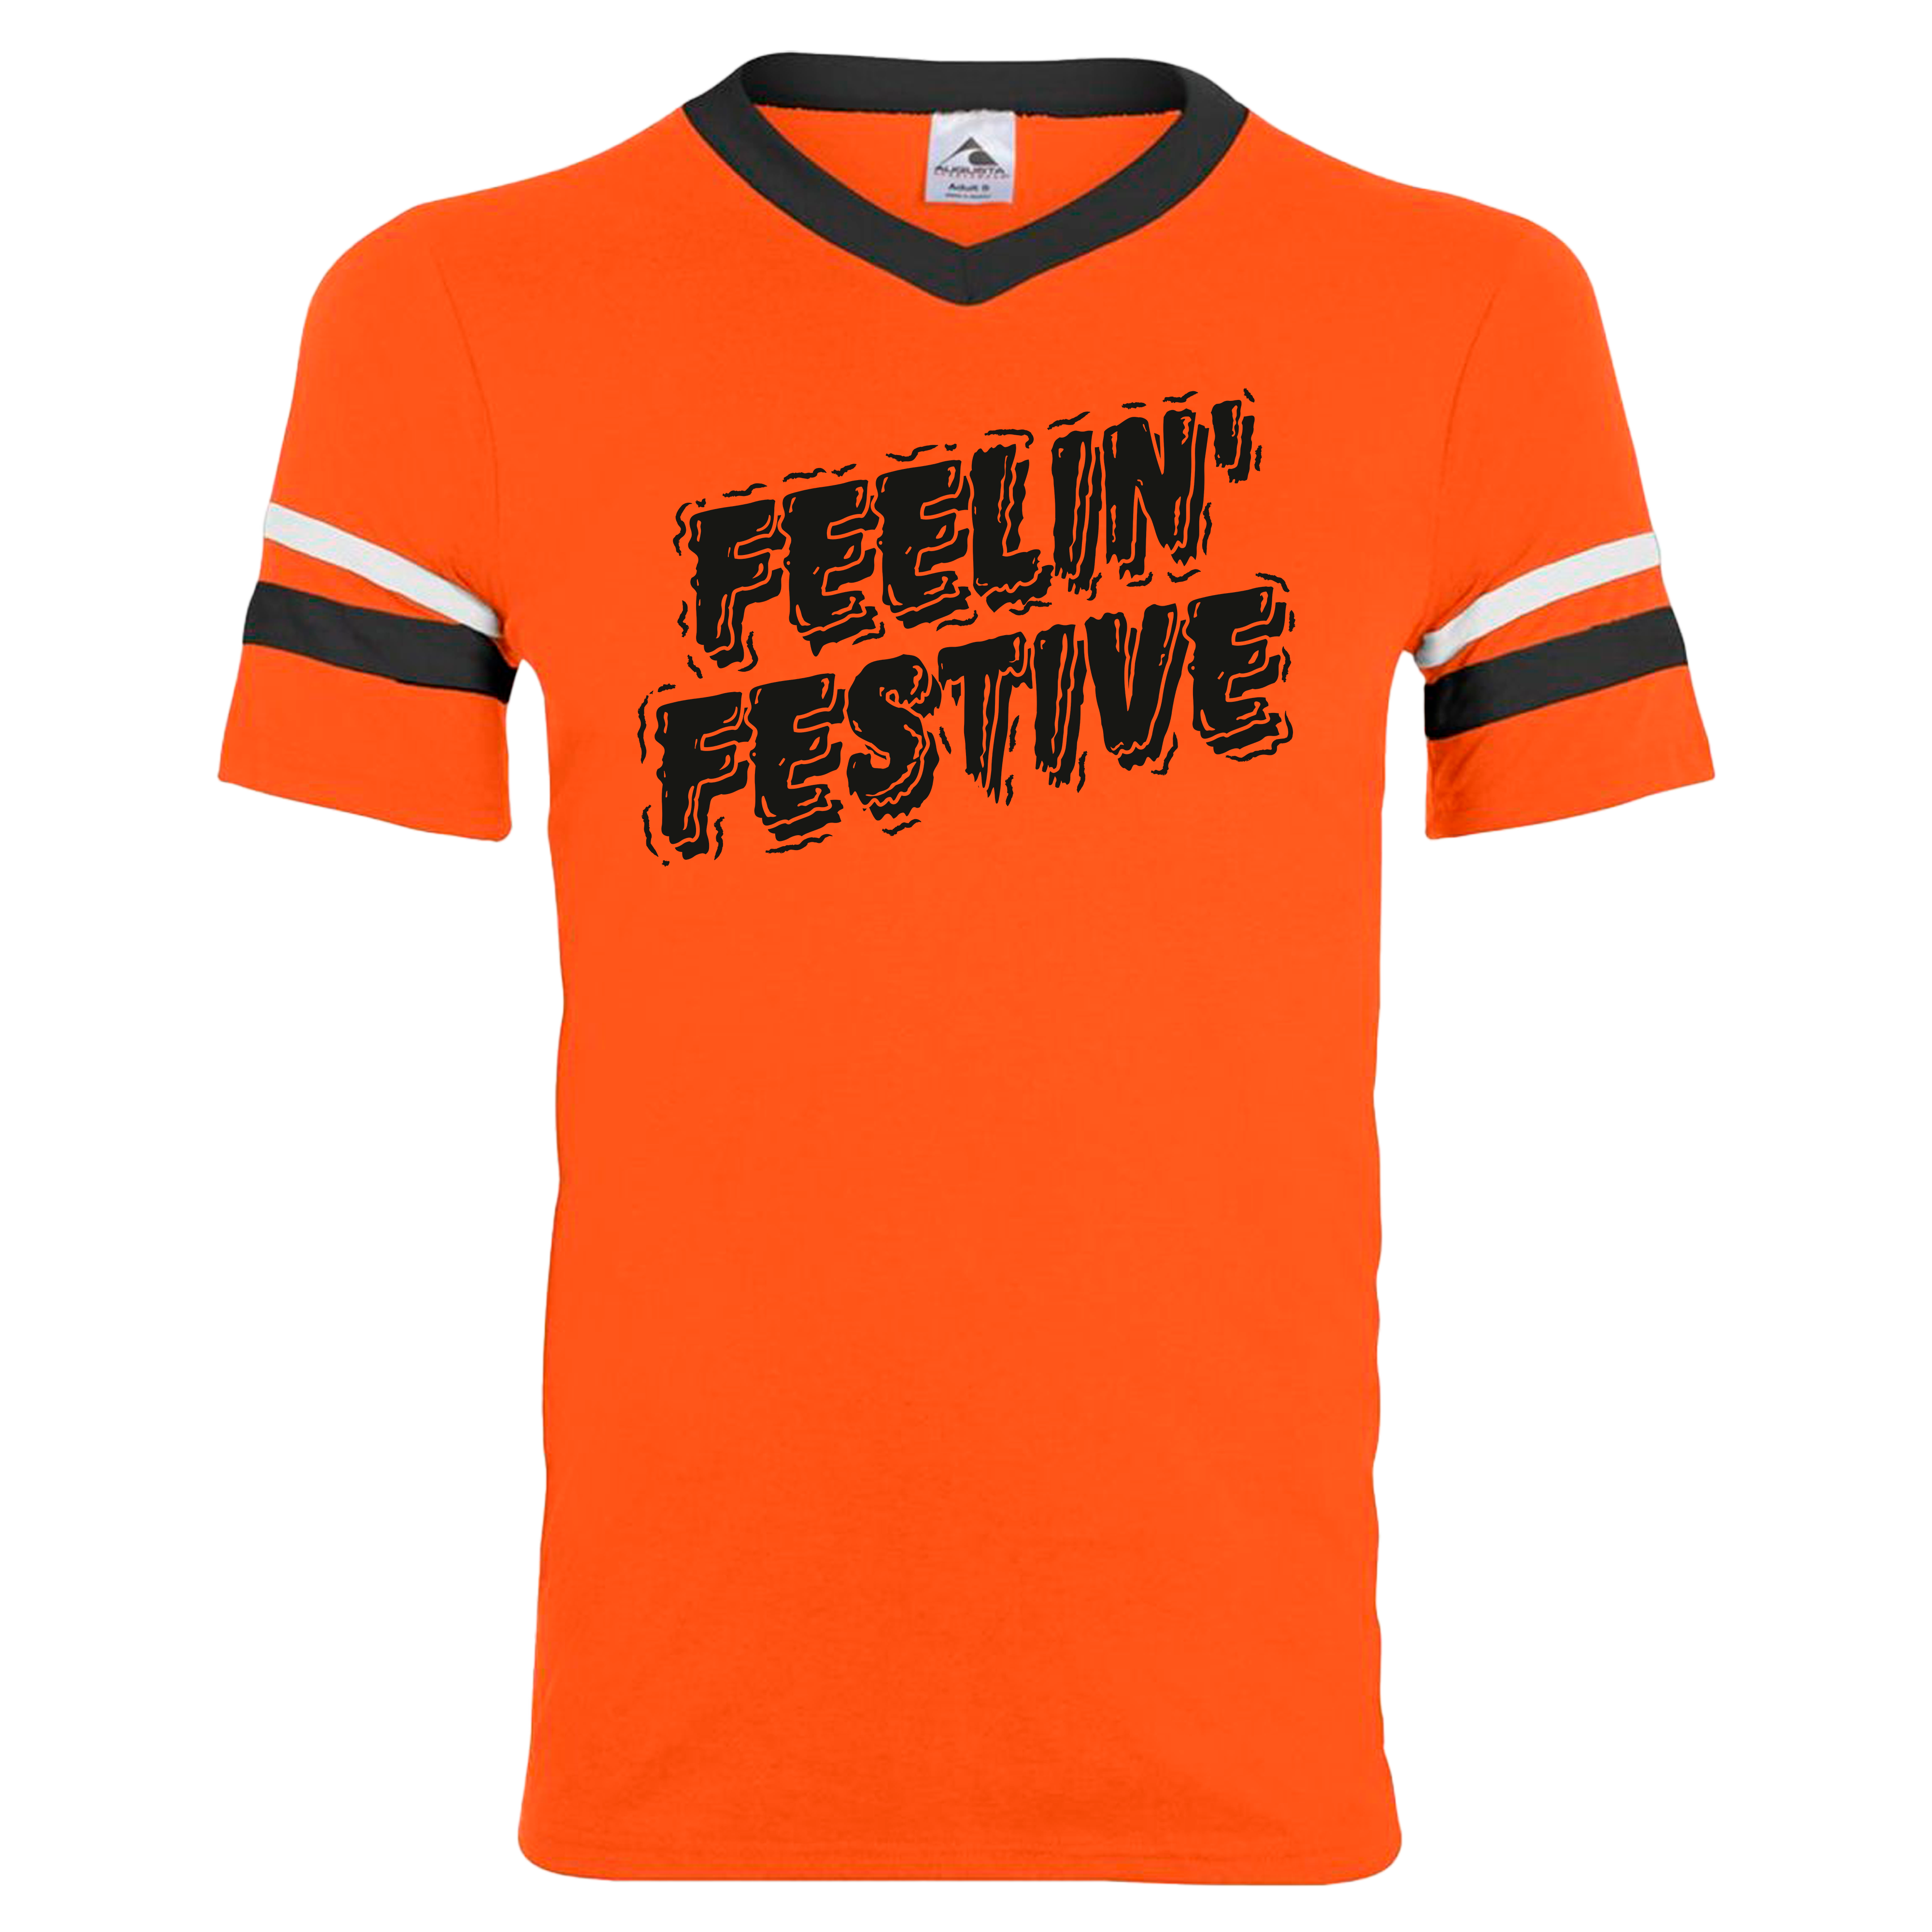 Halloween Feelin' Festive dressing festive orange ringer